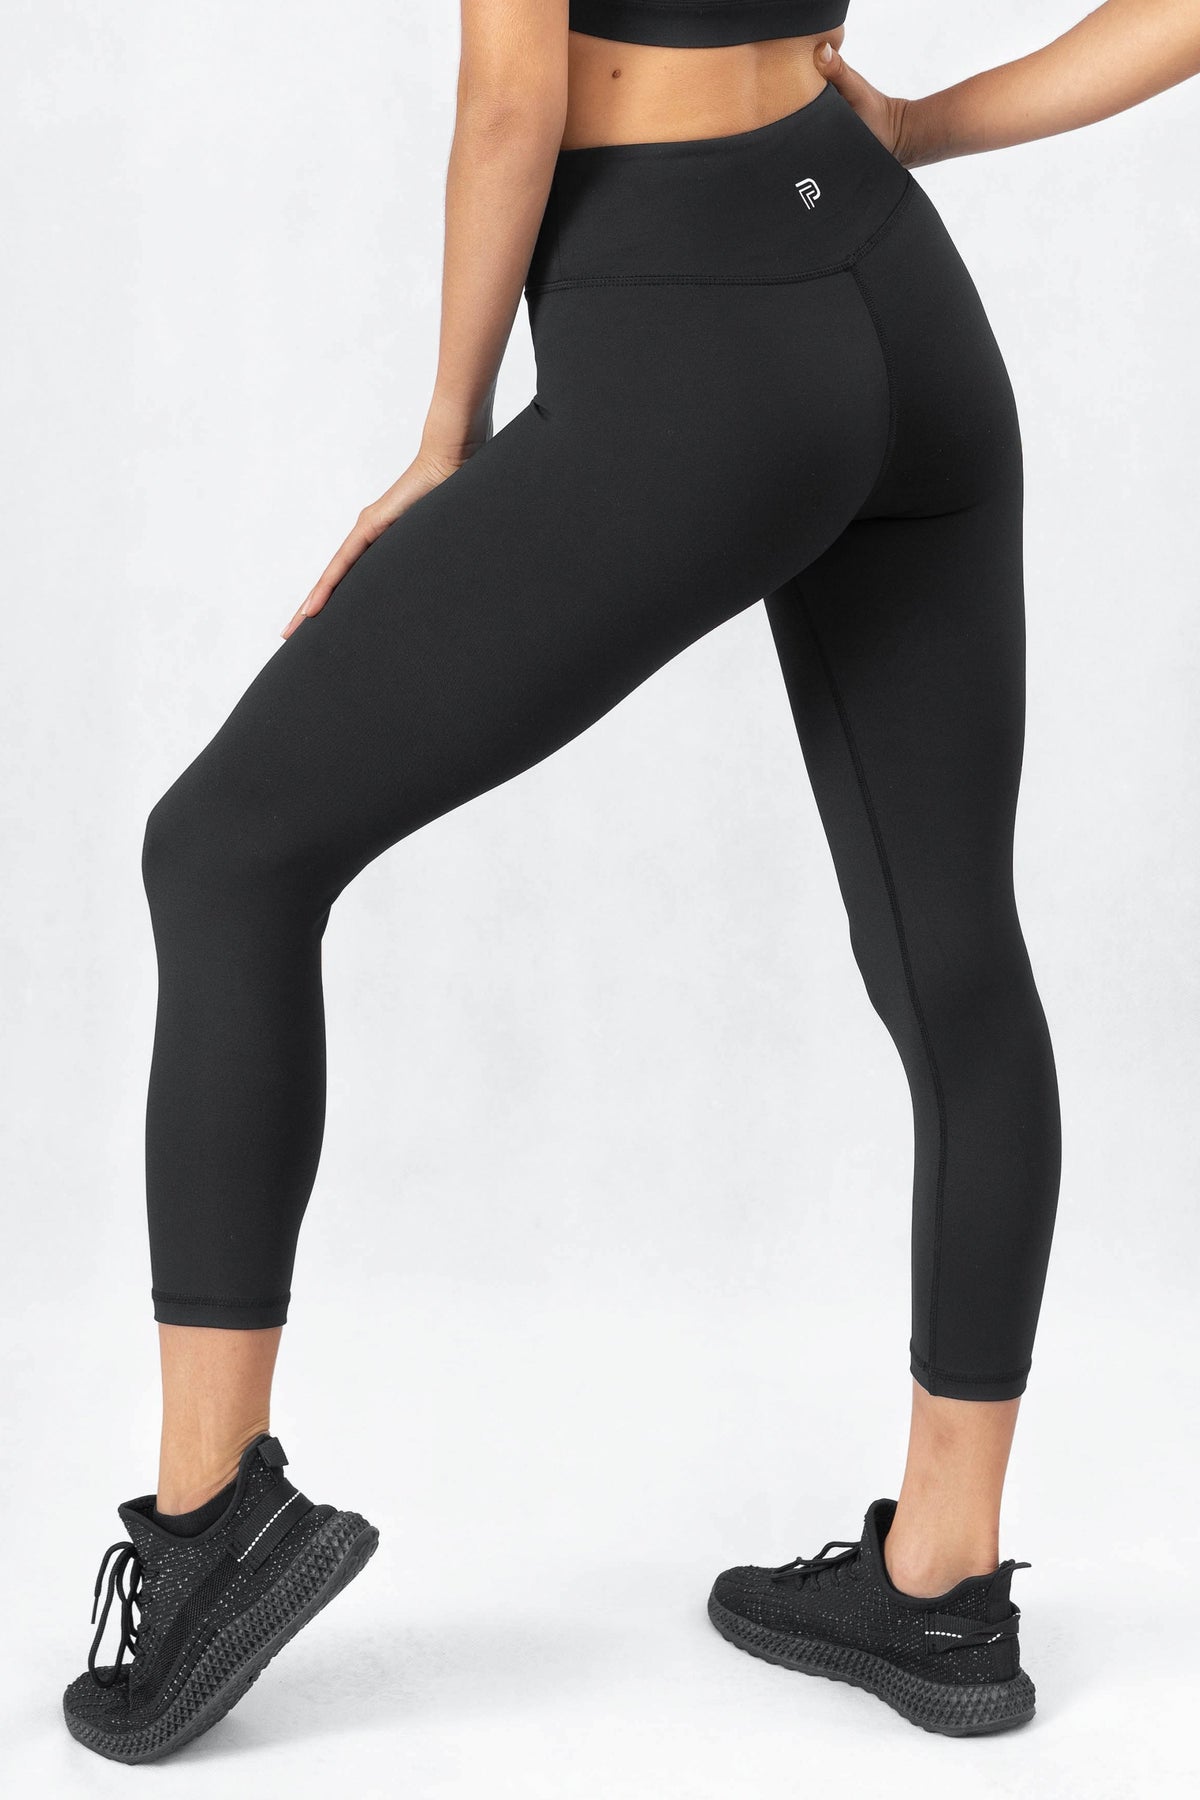 Best Black Leggings - 100% Squat Proof | fitphyt leggings